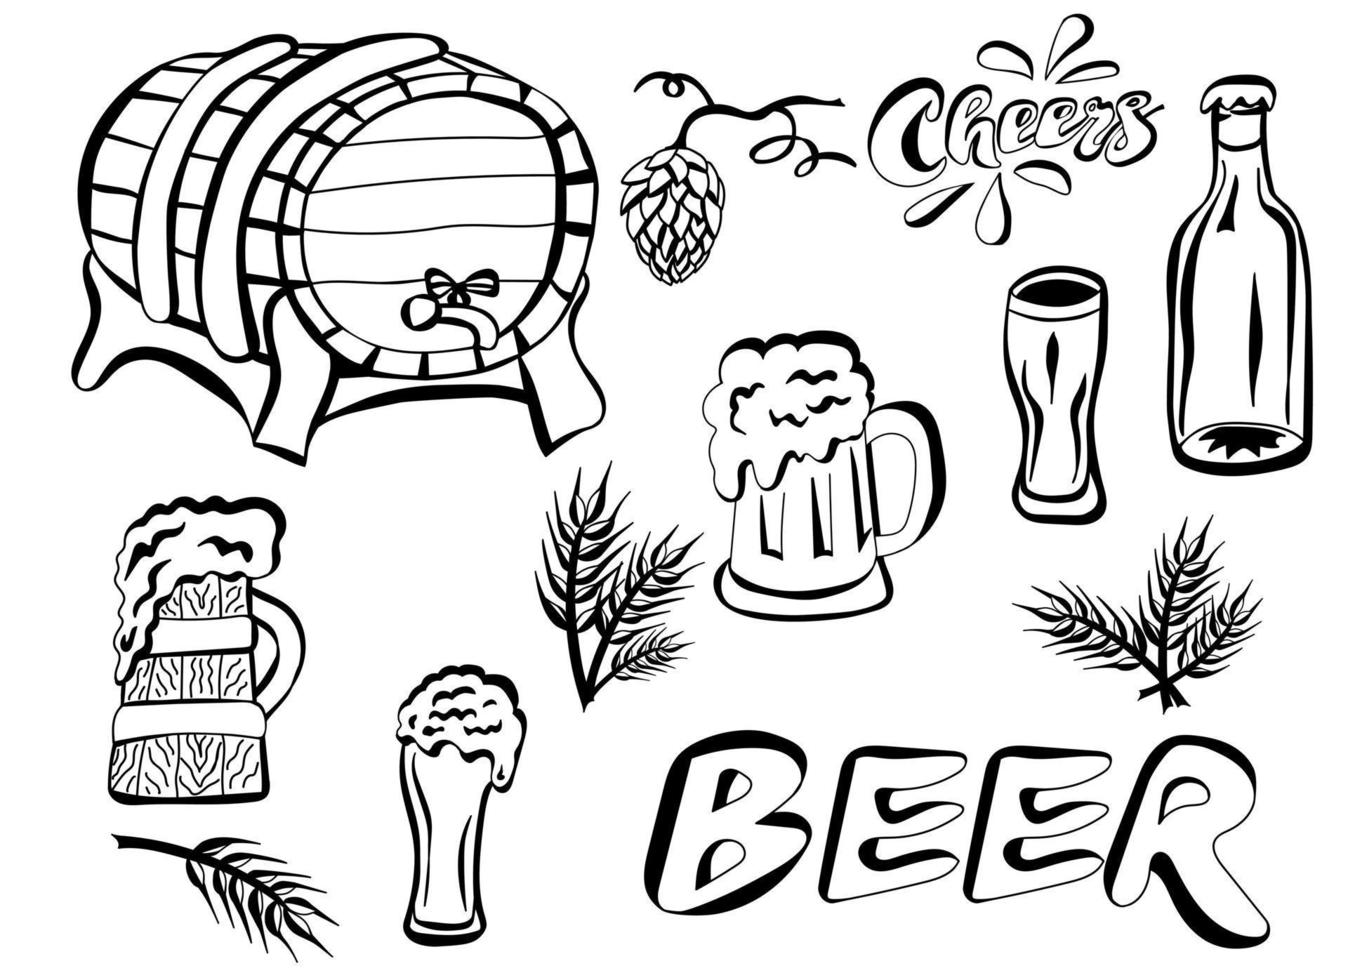 objetos dibujados a mano de cerveza establecidos para el diseño en estilo de fideos vector